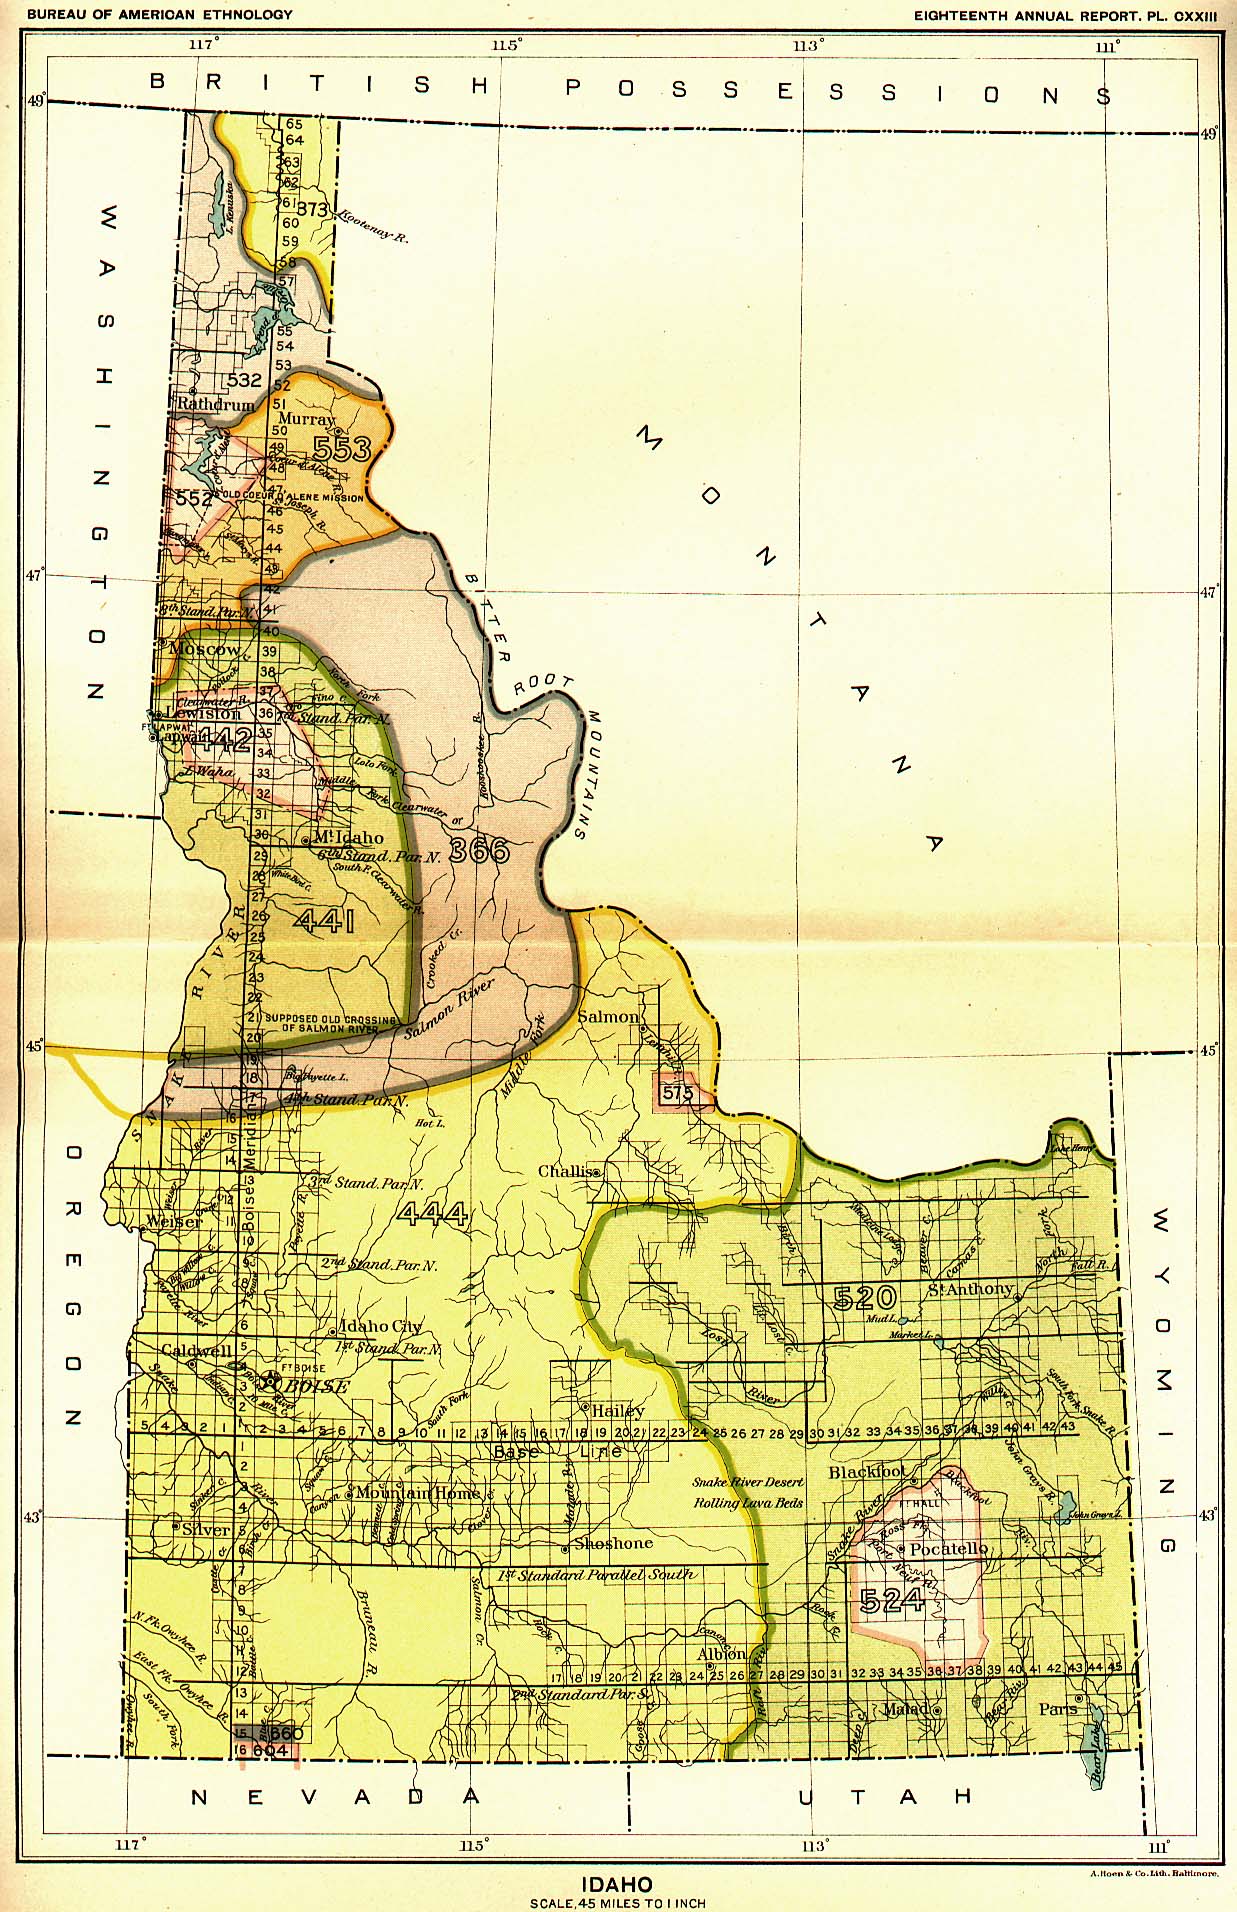 Idaho, Map 16